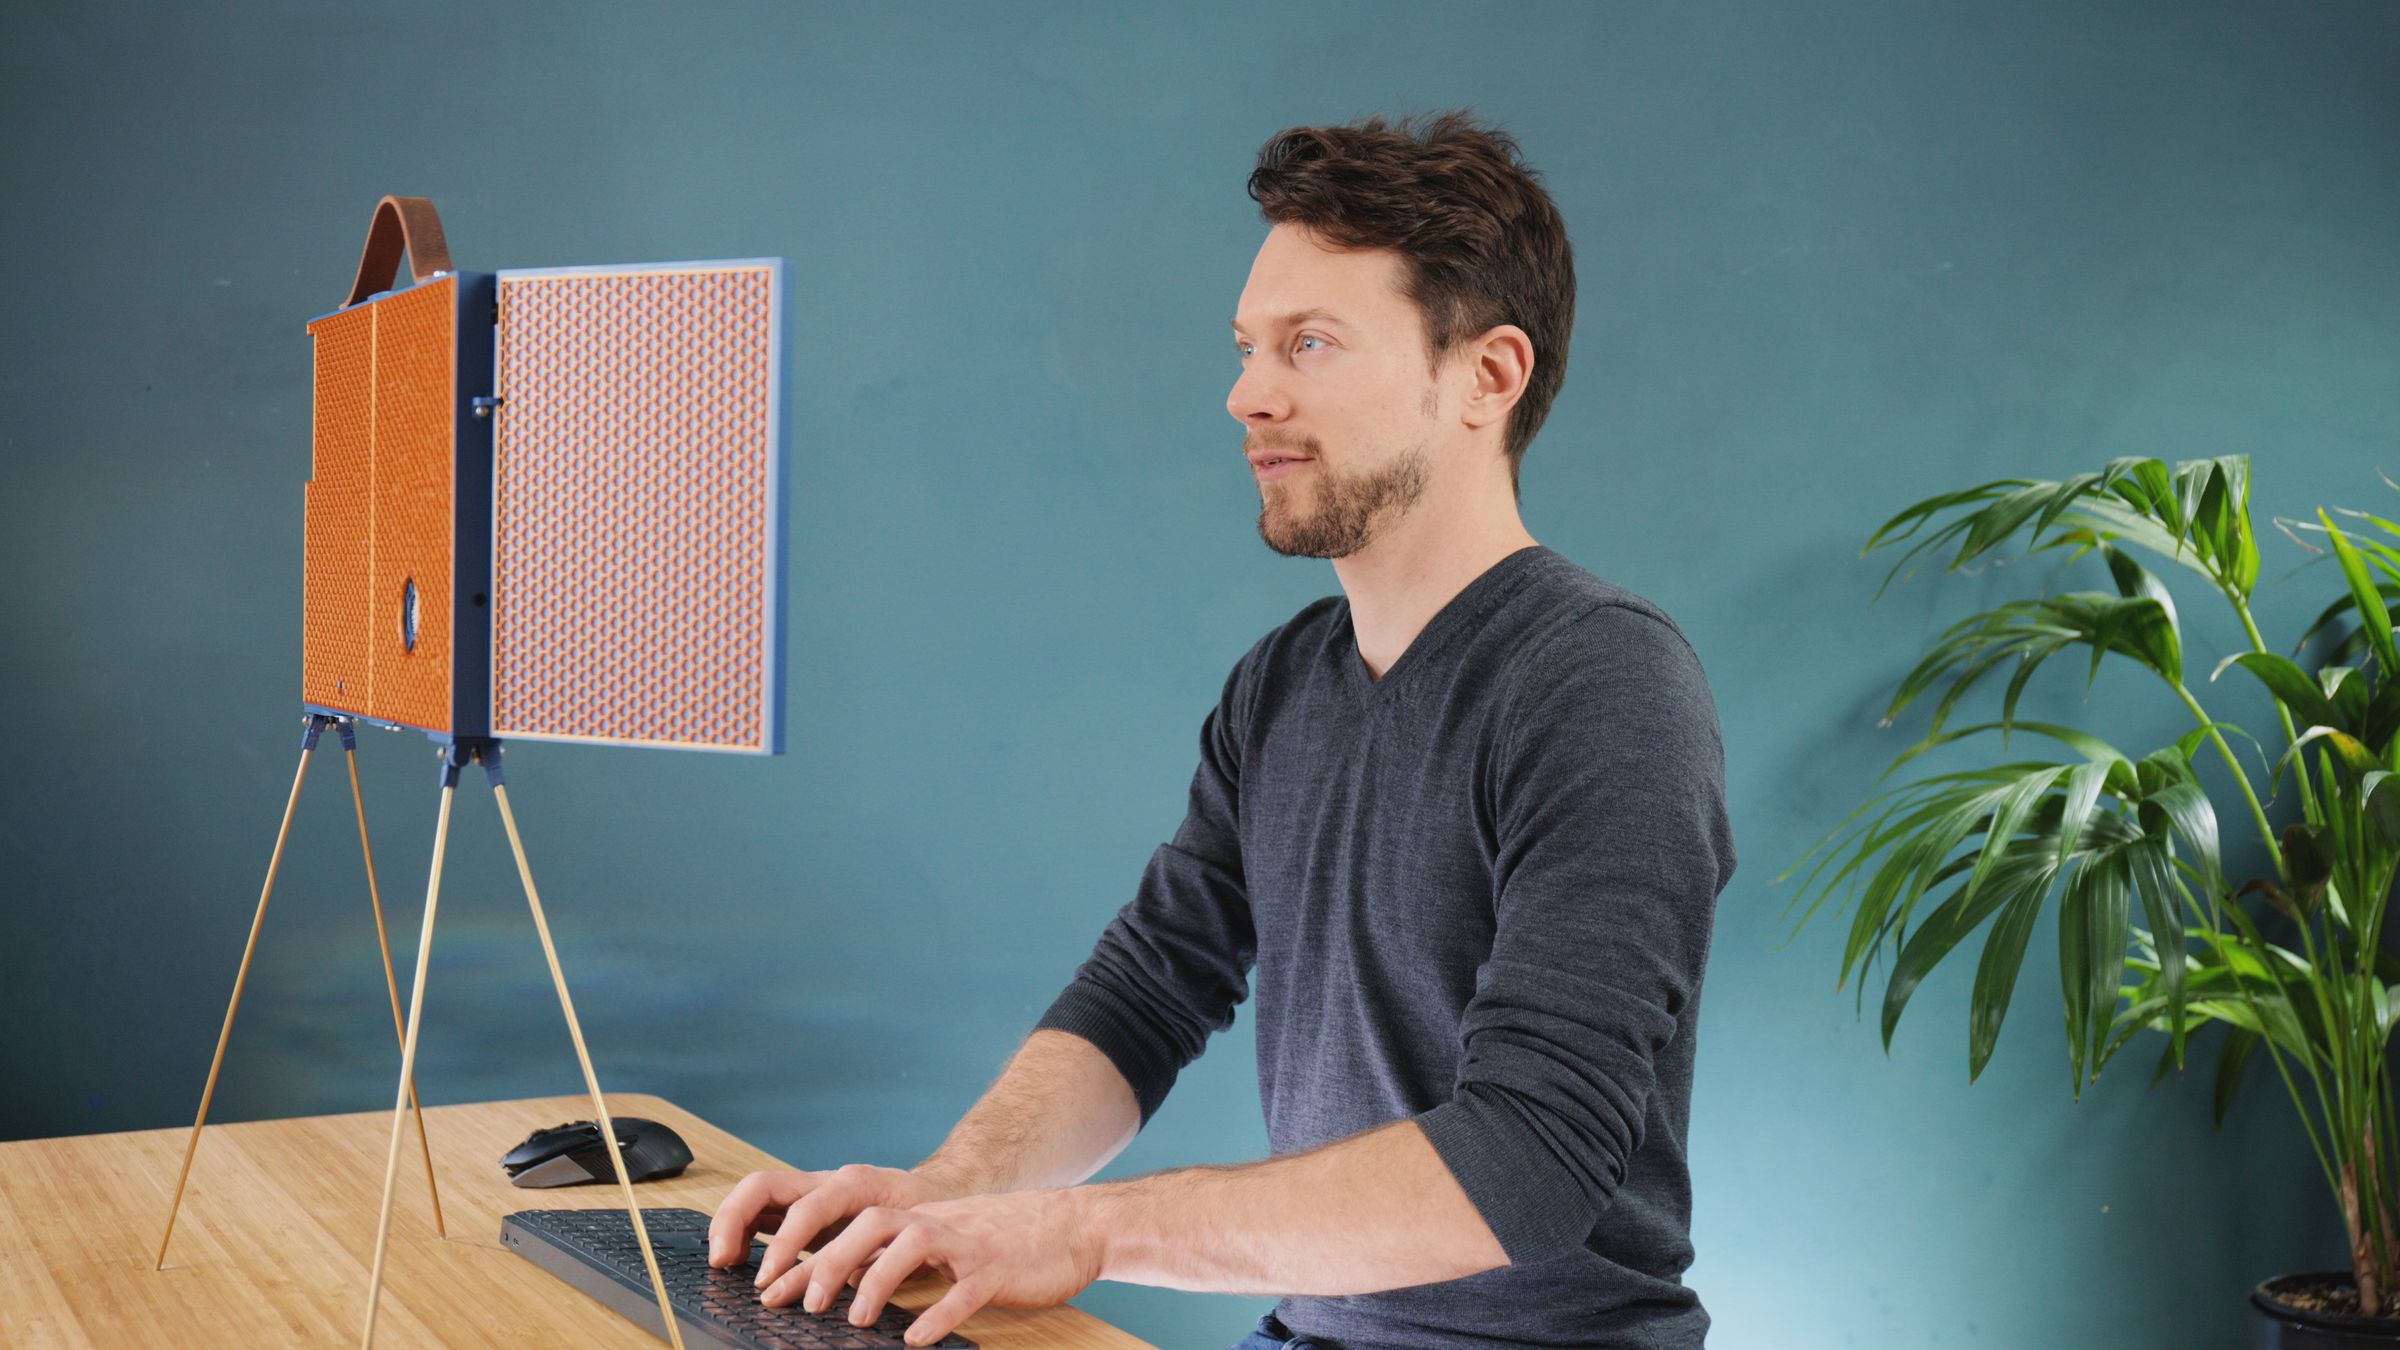 Foto del creador de marcos de bricolaje sentado frente a él, escribiendo con una postura suave.